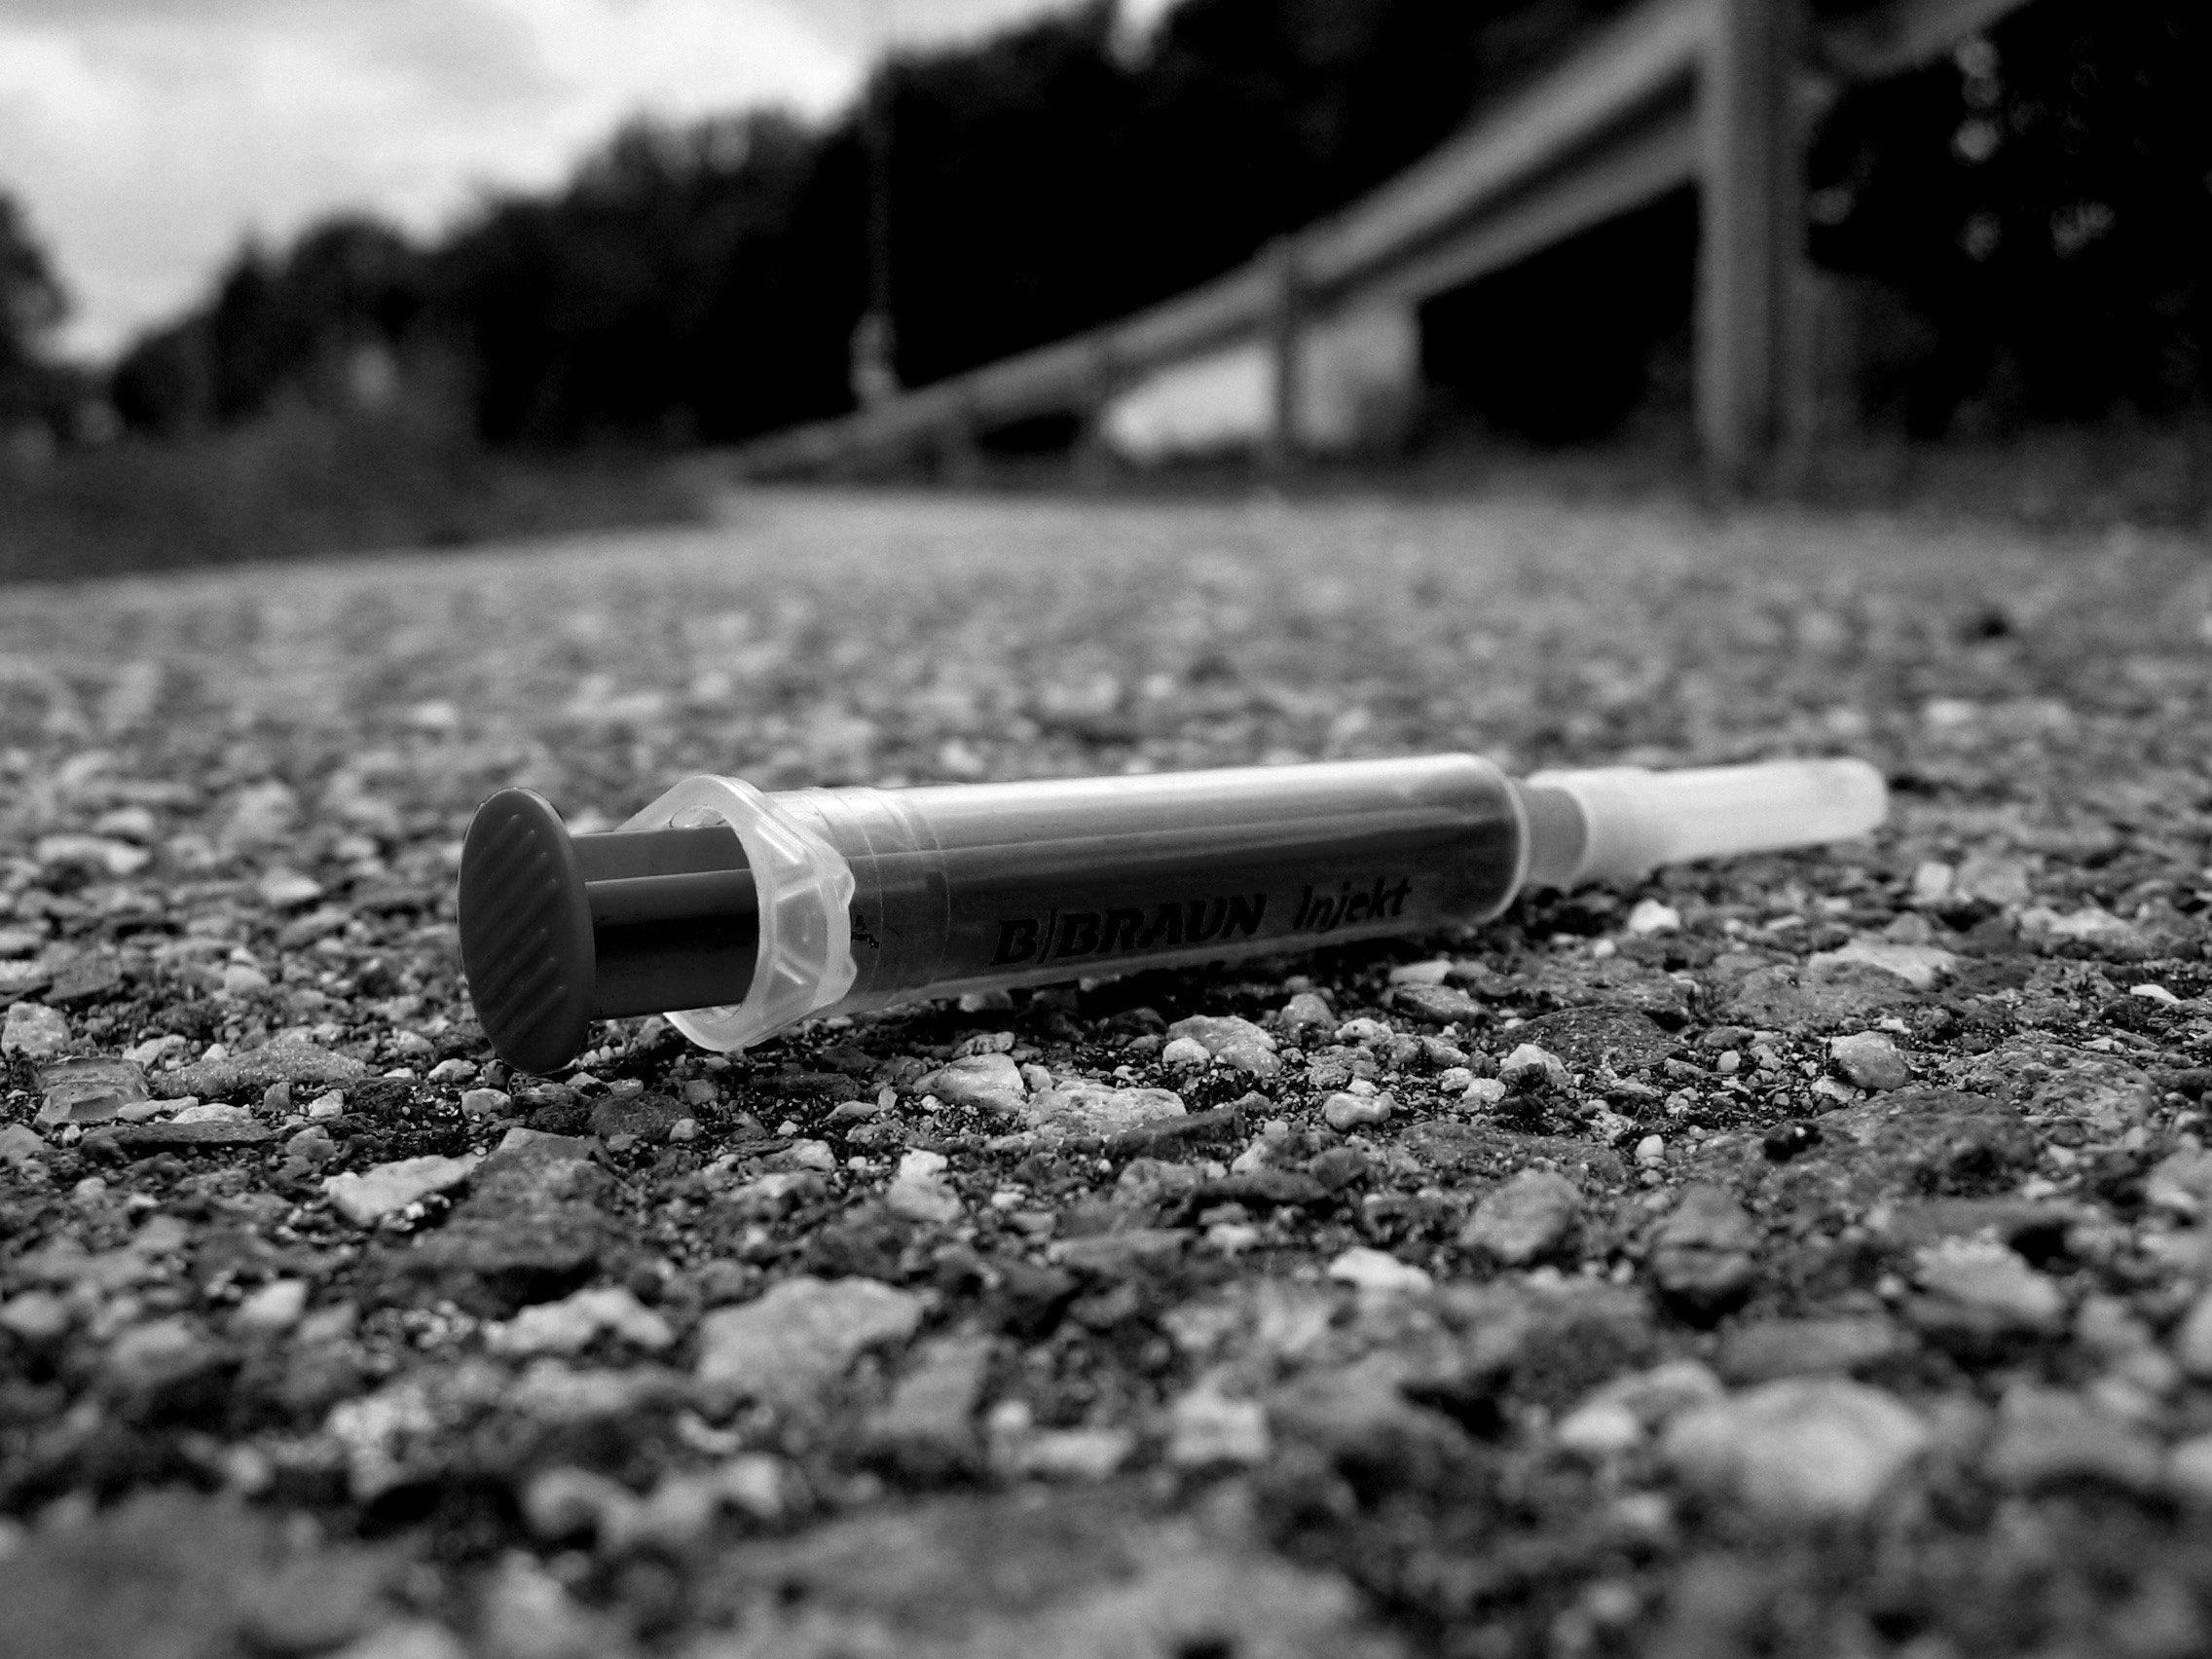 2014 Drug Trends in Kentucky